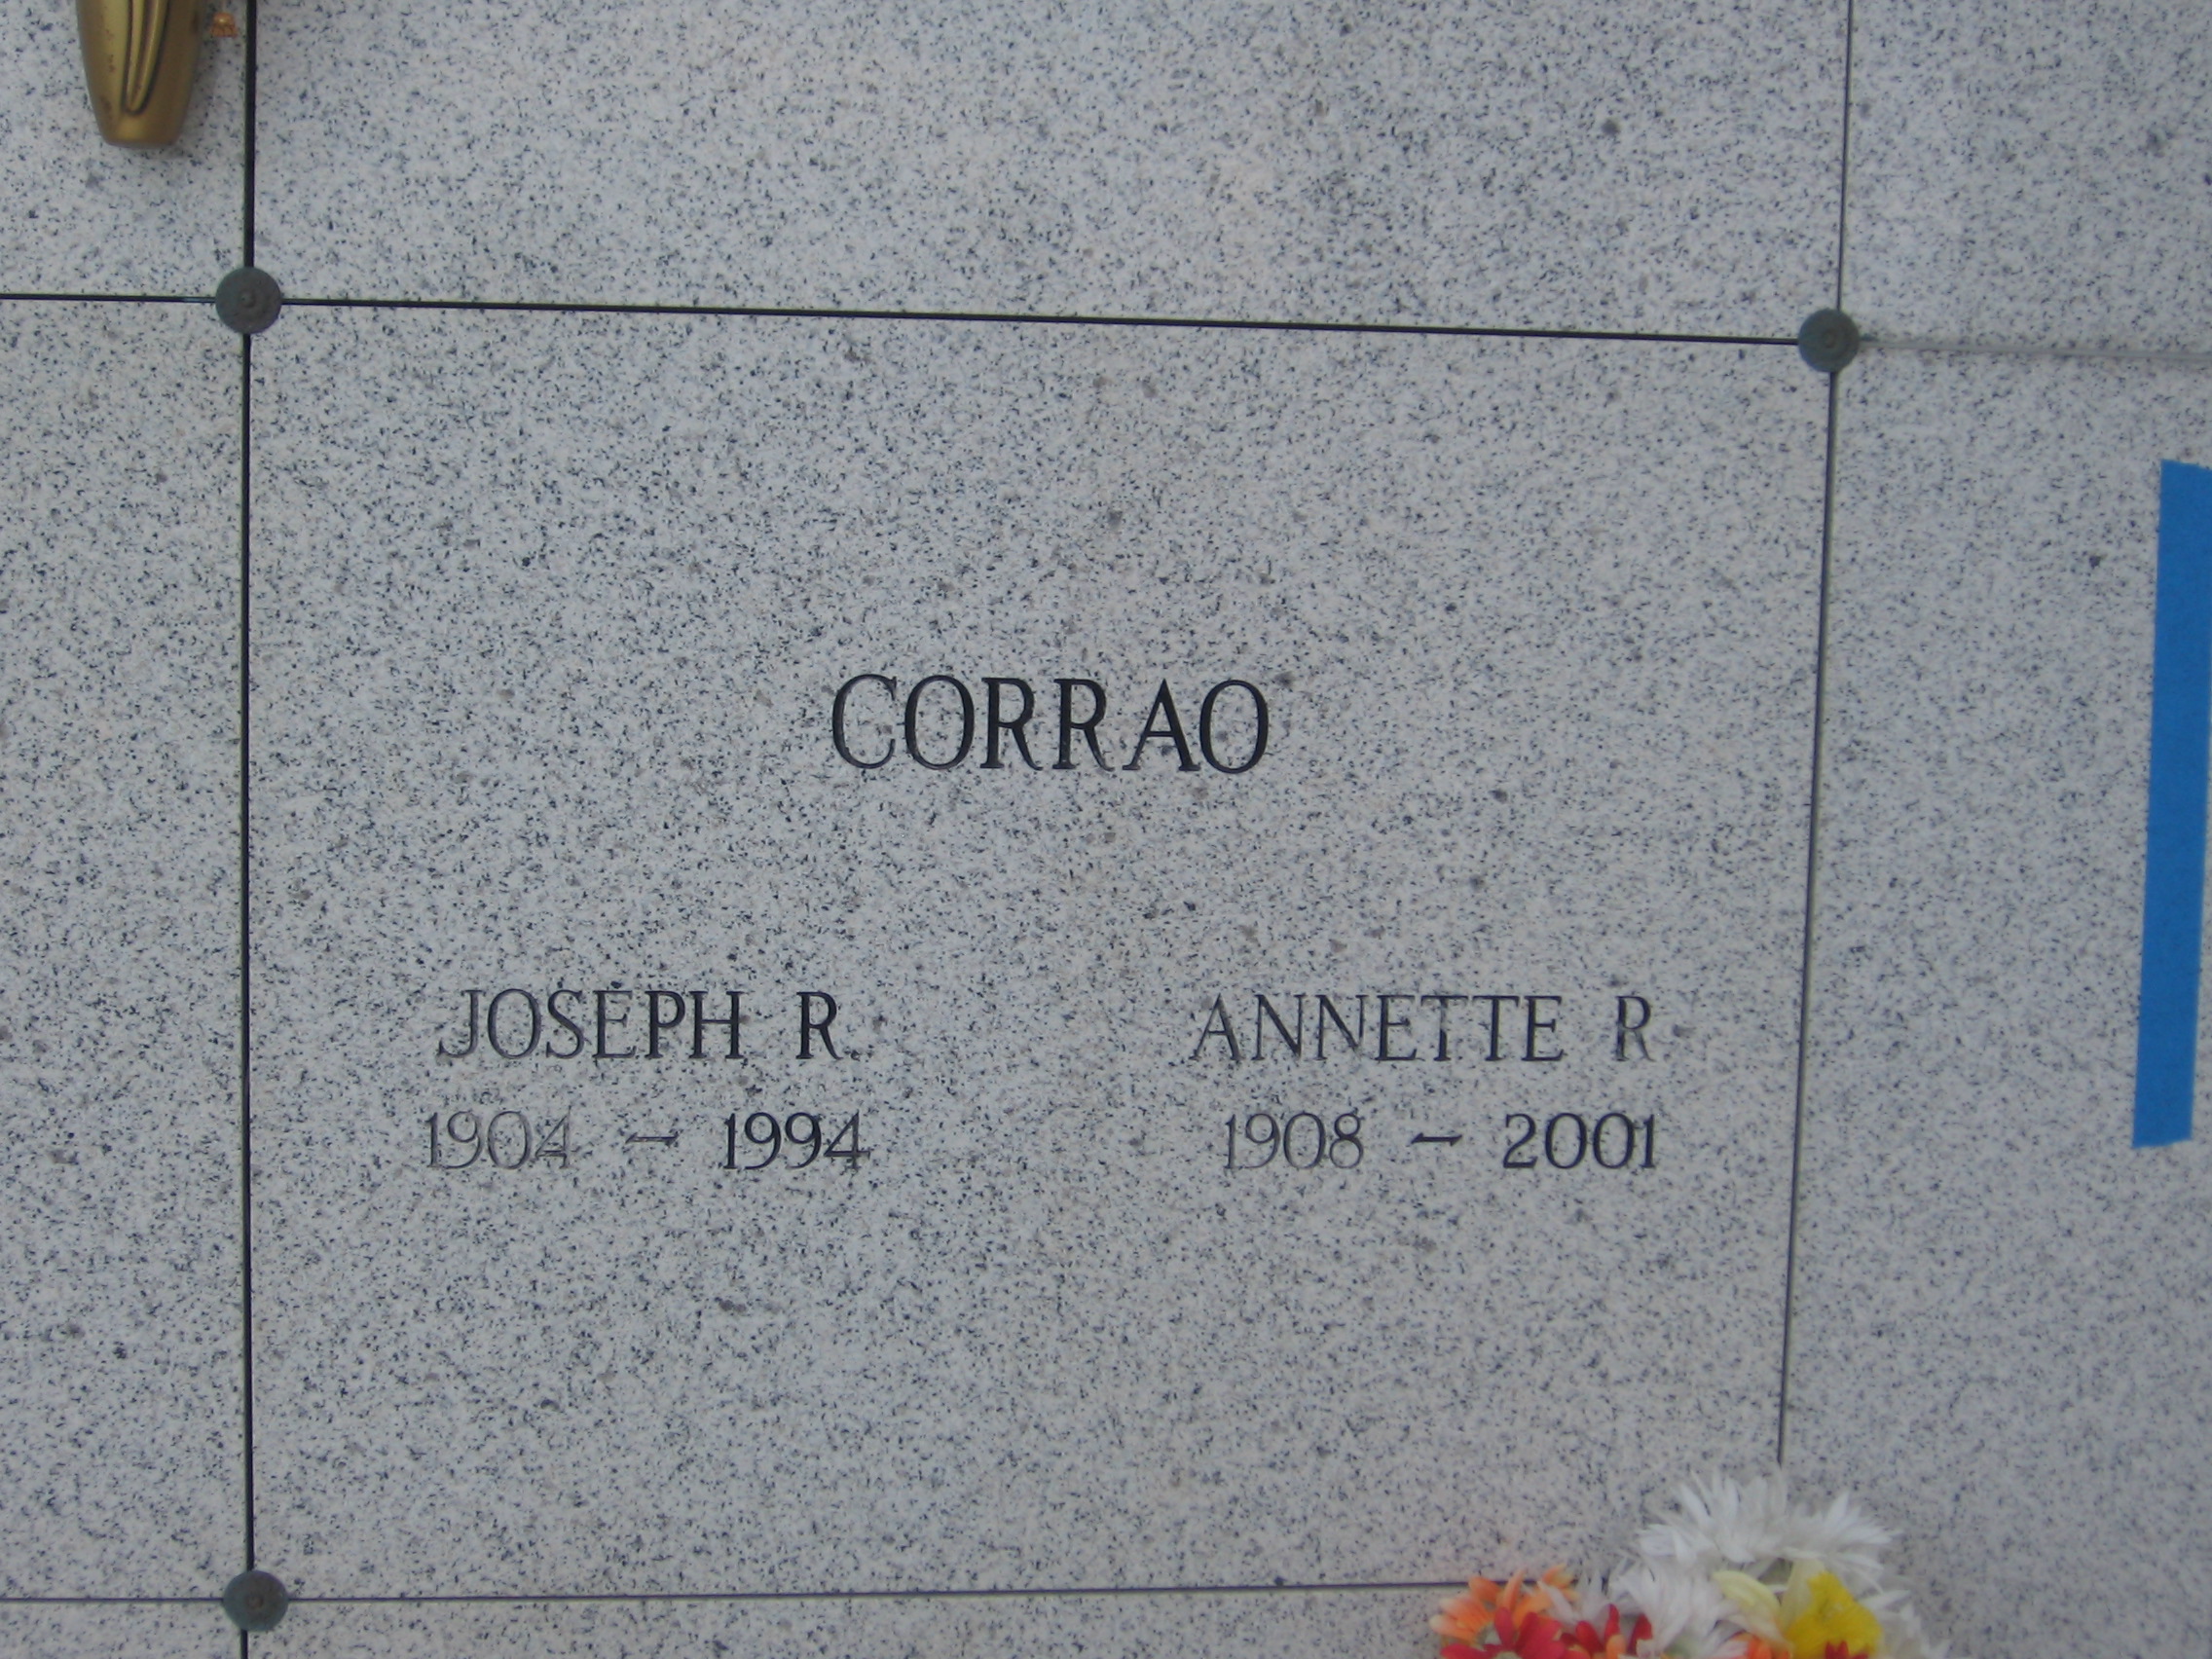 Joseph R Corrao